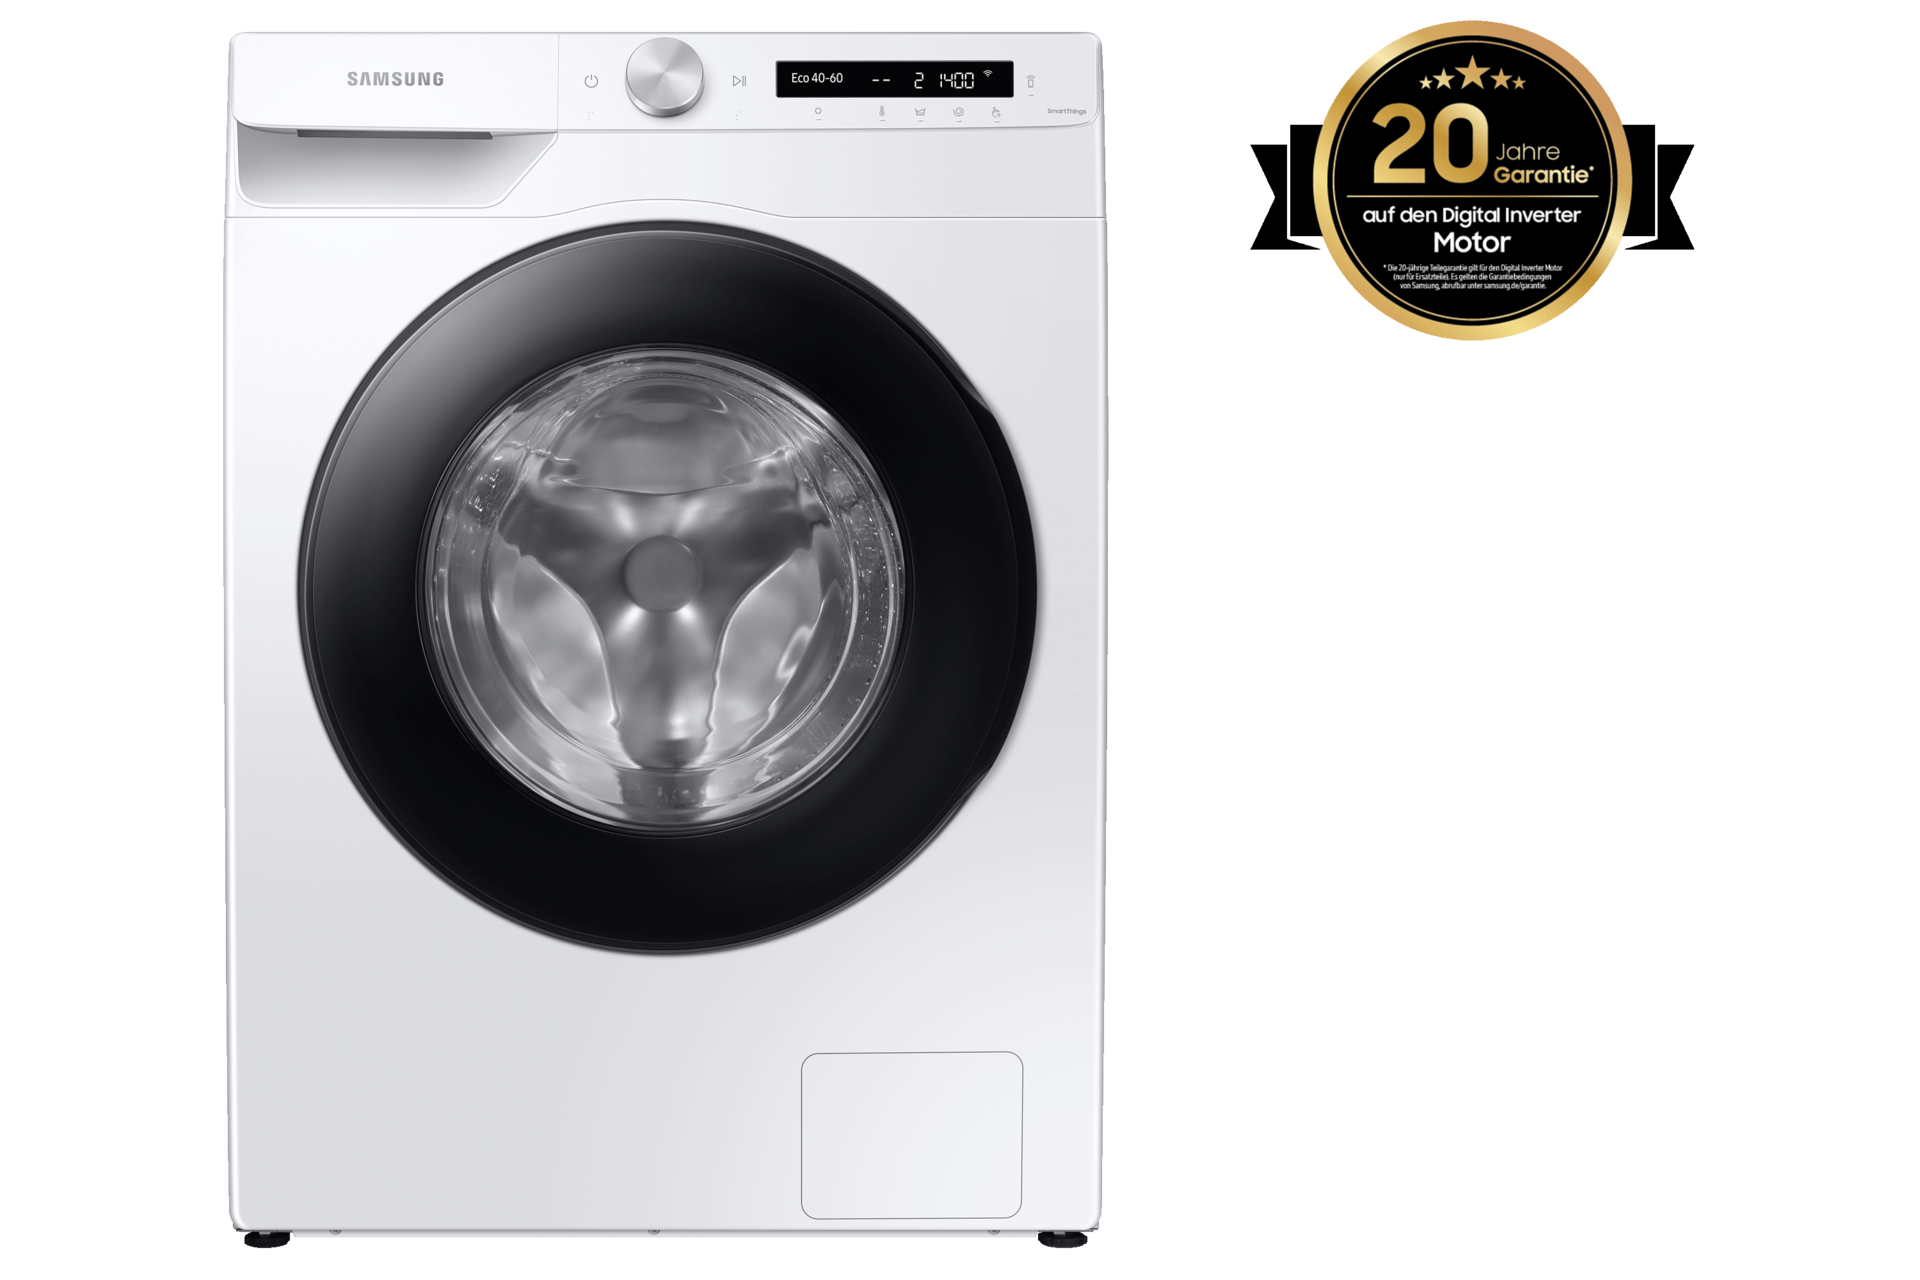 Waschmaschine mit WLAN 10,5 kg kaufen (WW10T504AAW/S2) | Samsung DE